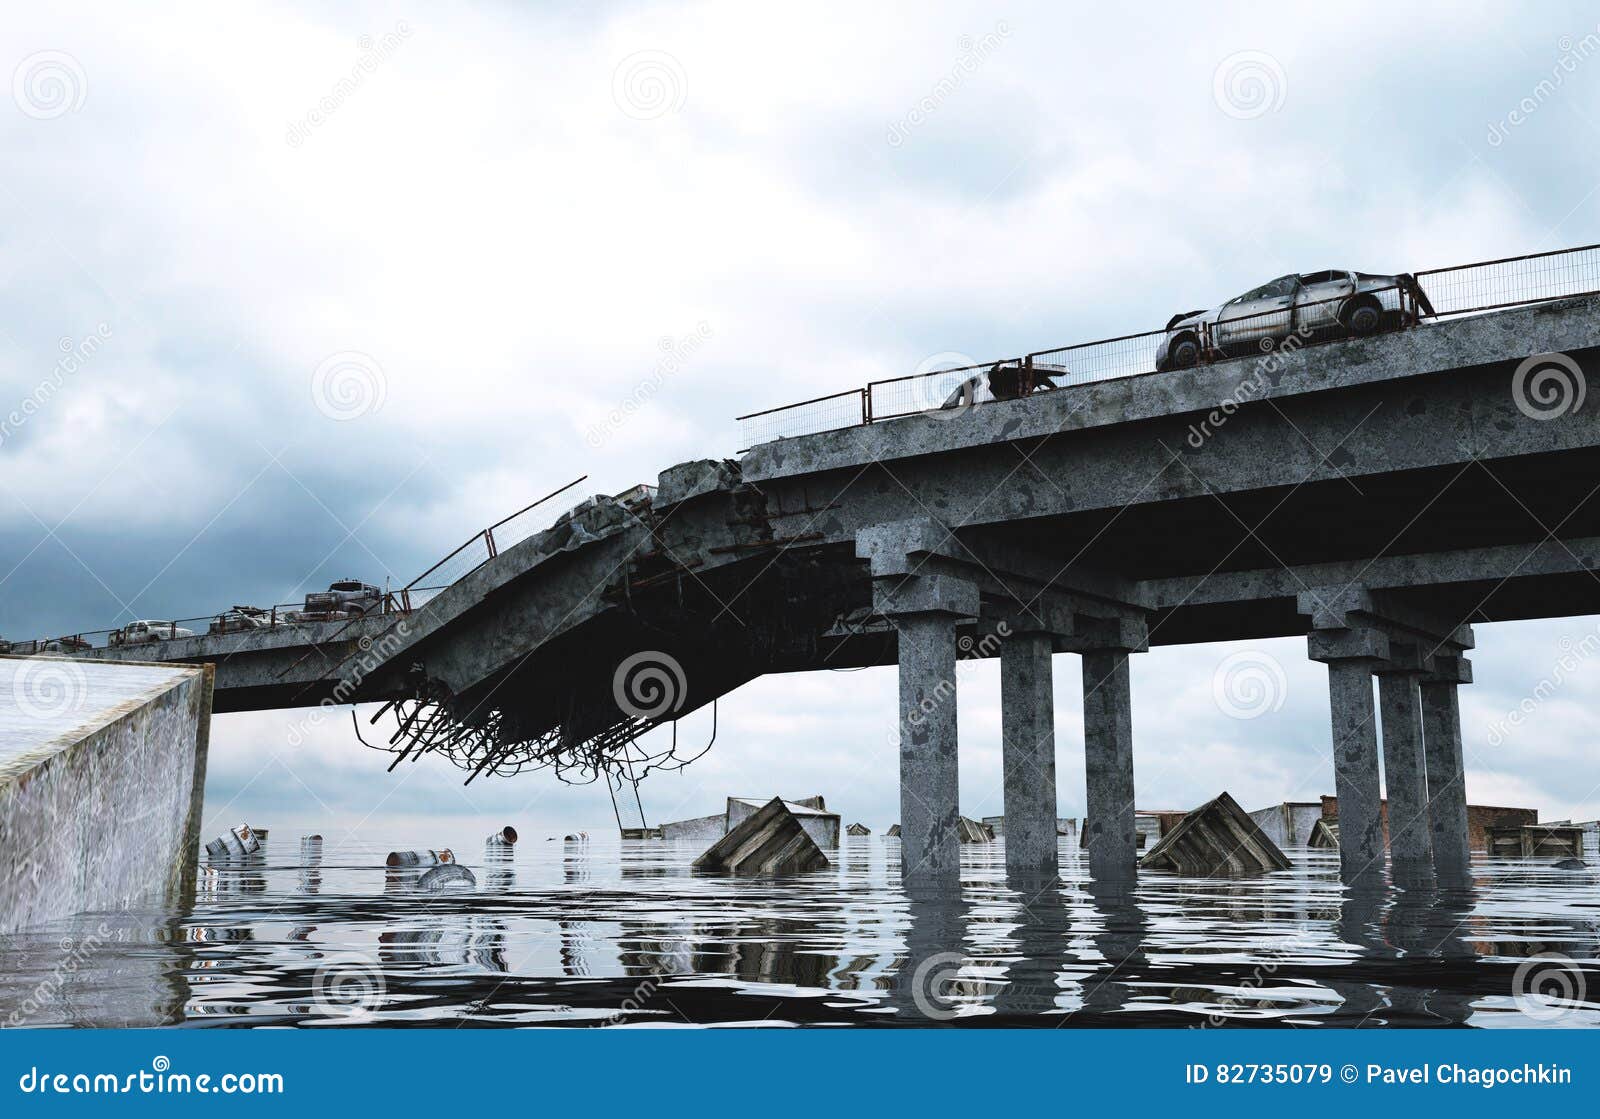 Разбиваю мосты. Разрушенный мост. Разрушение моста. Сломанный мост. Разрушенный железобетонный мост.